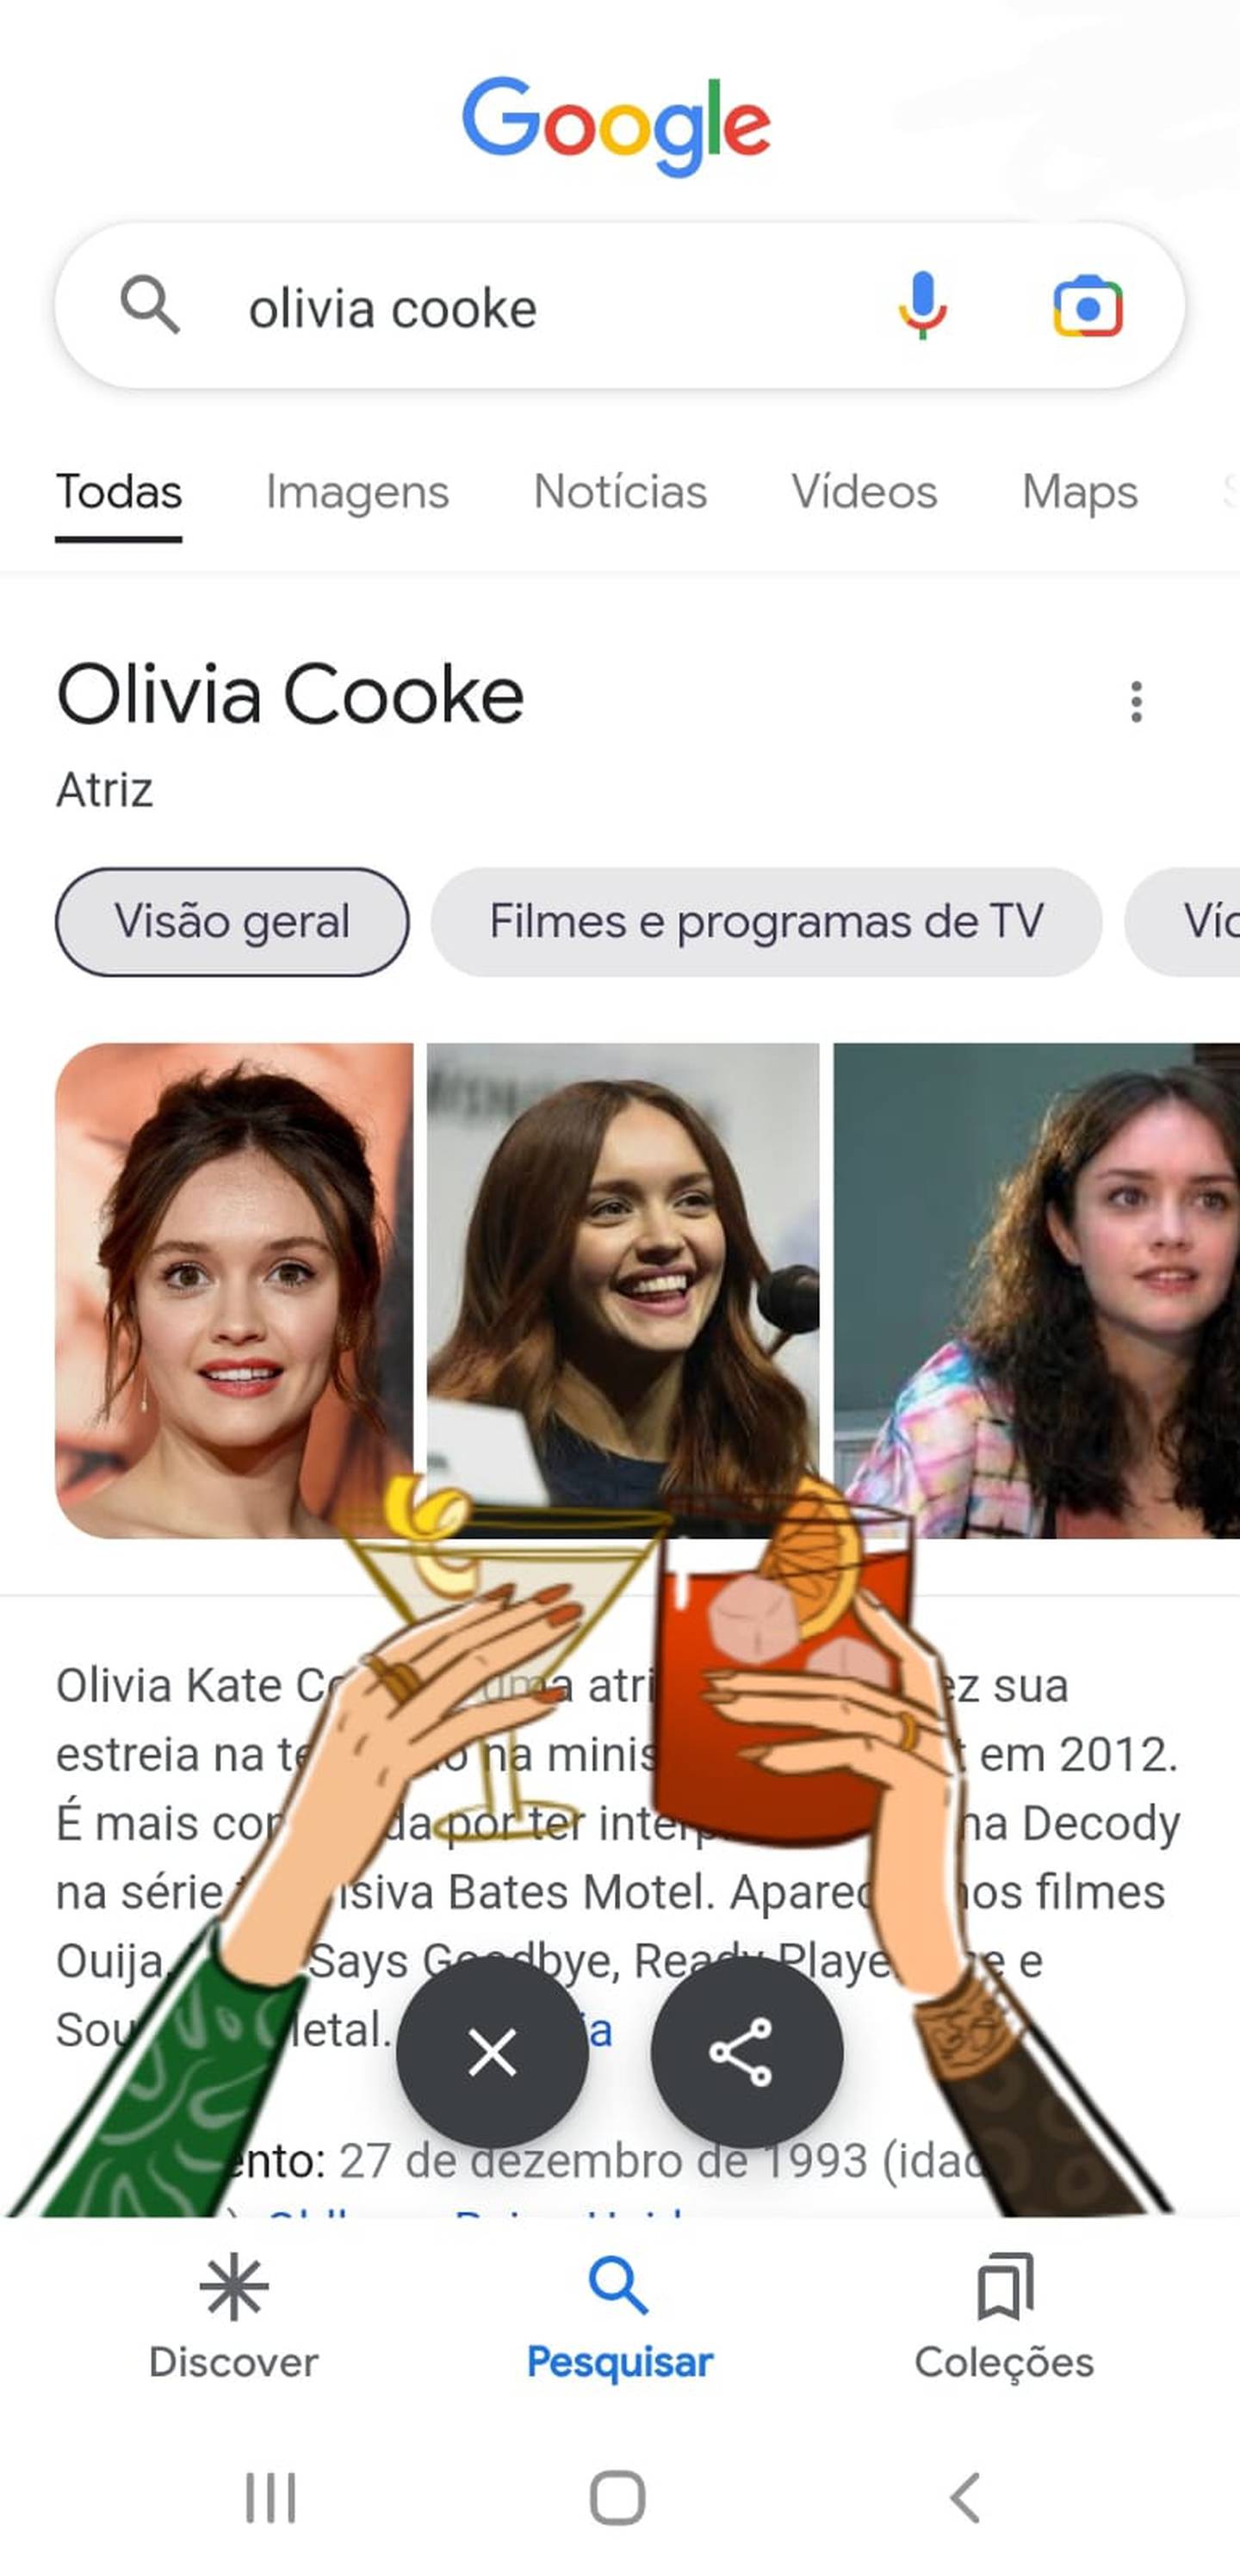 Digite Olivia Cooke ou Emma D'arcy no Google e veja a surpresa!